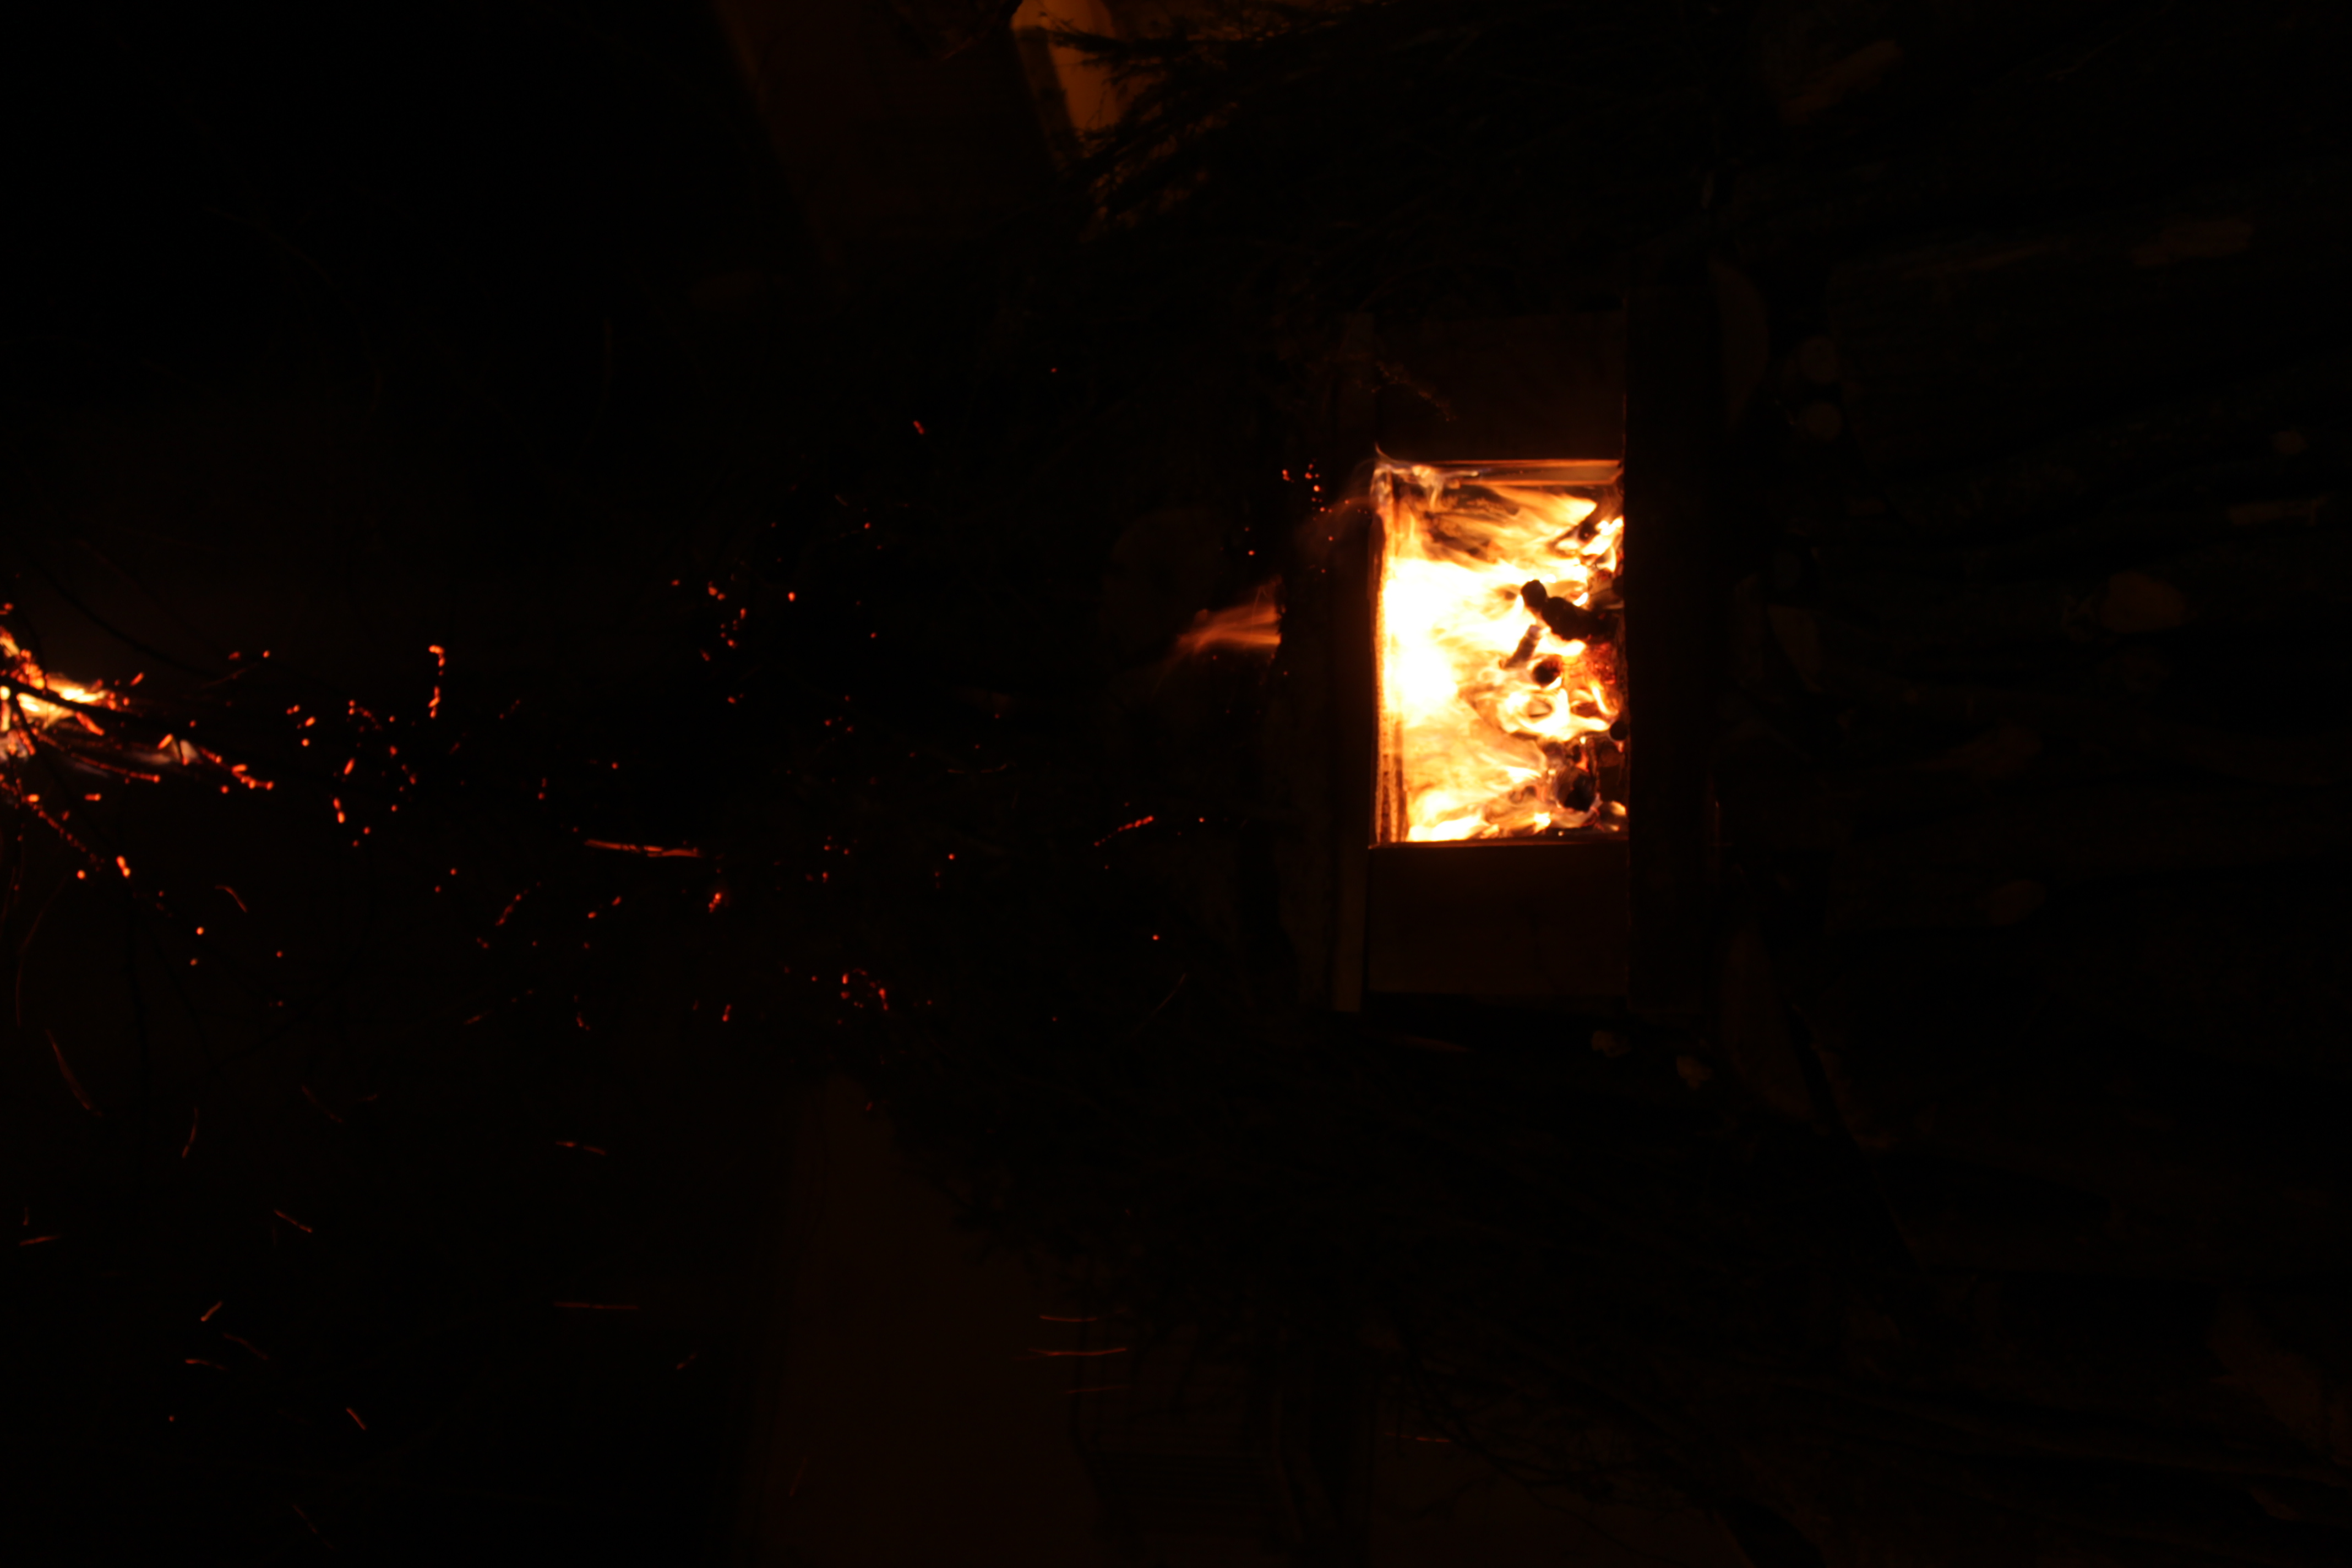 Gianfranco Spitilli, Il fuoco di Natale a Nerito di Crognaleto, fotografia digitale